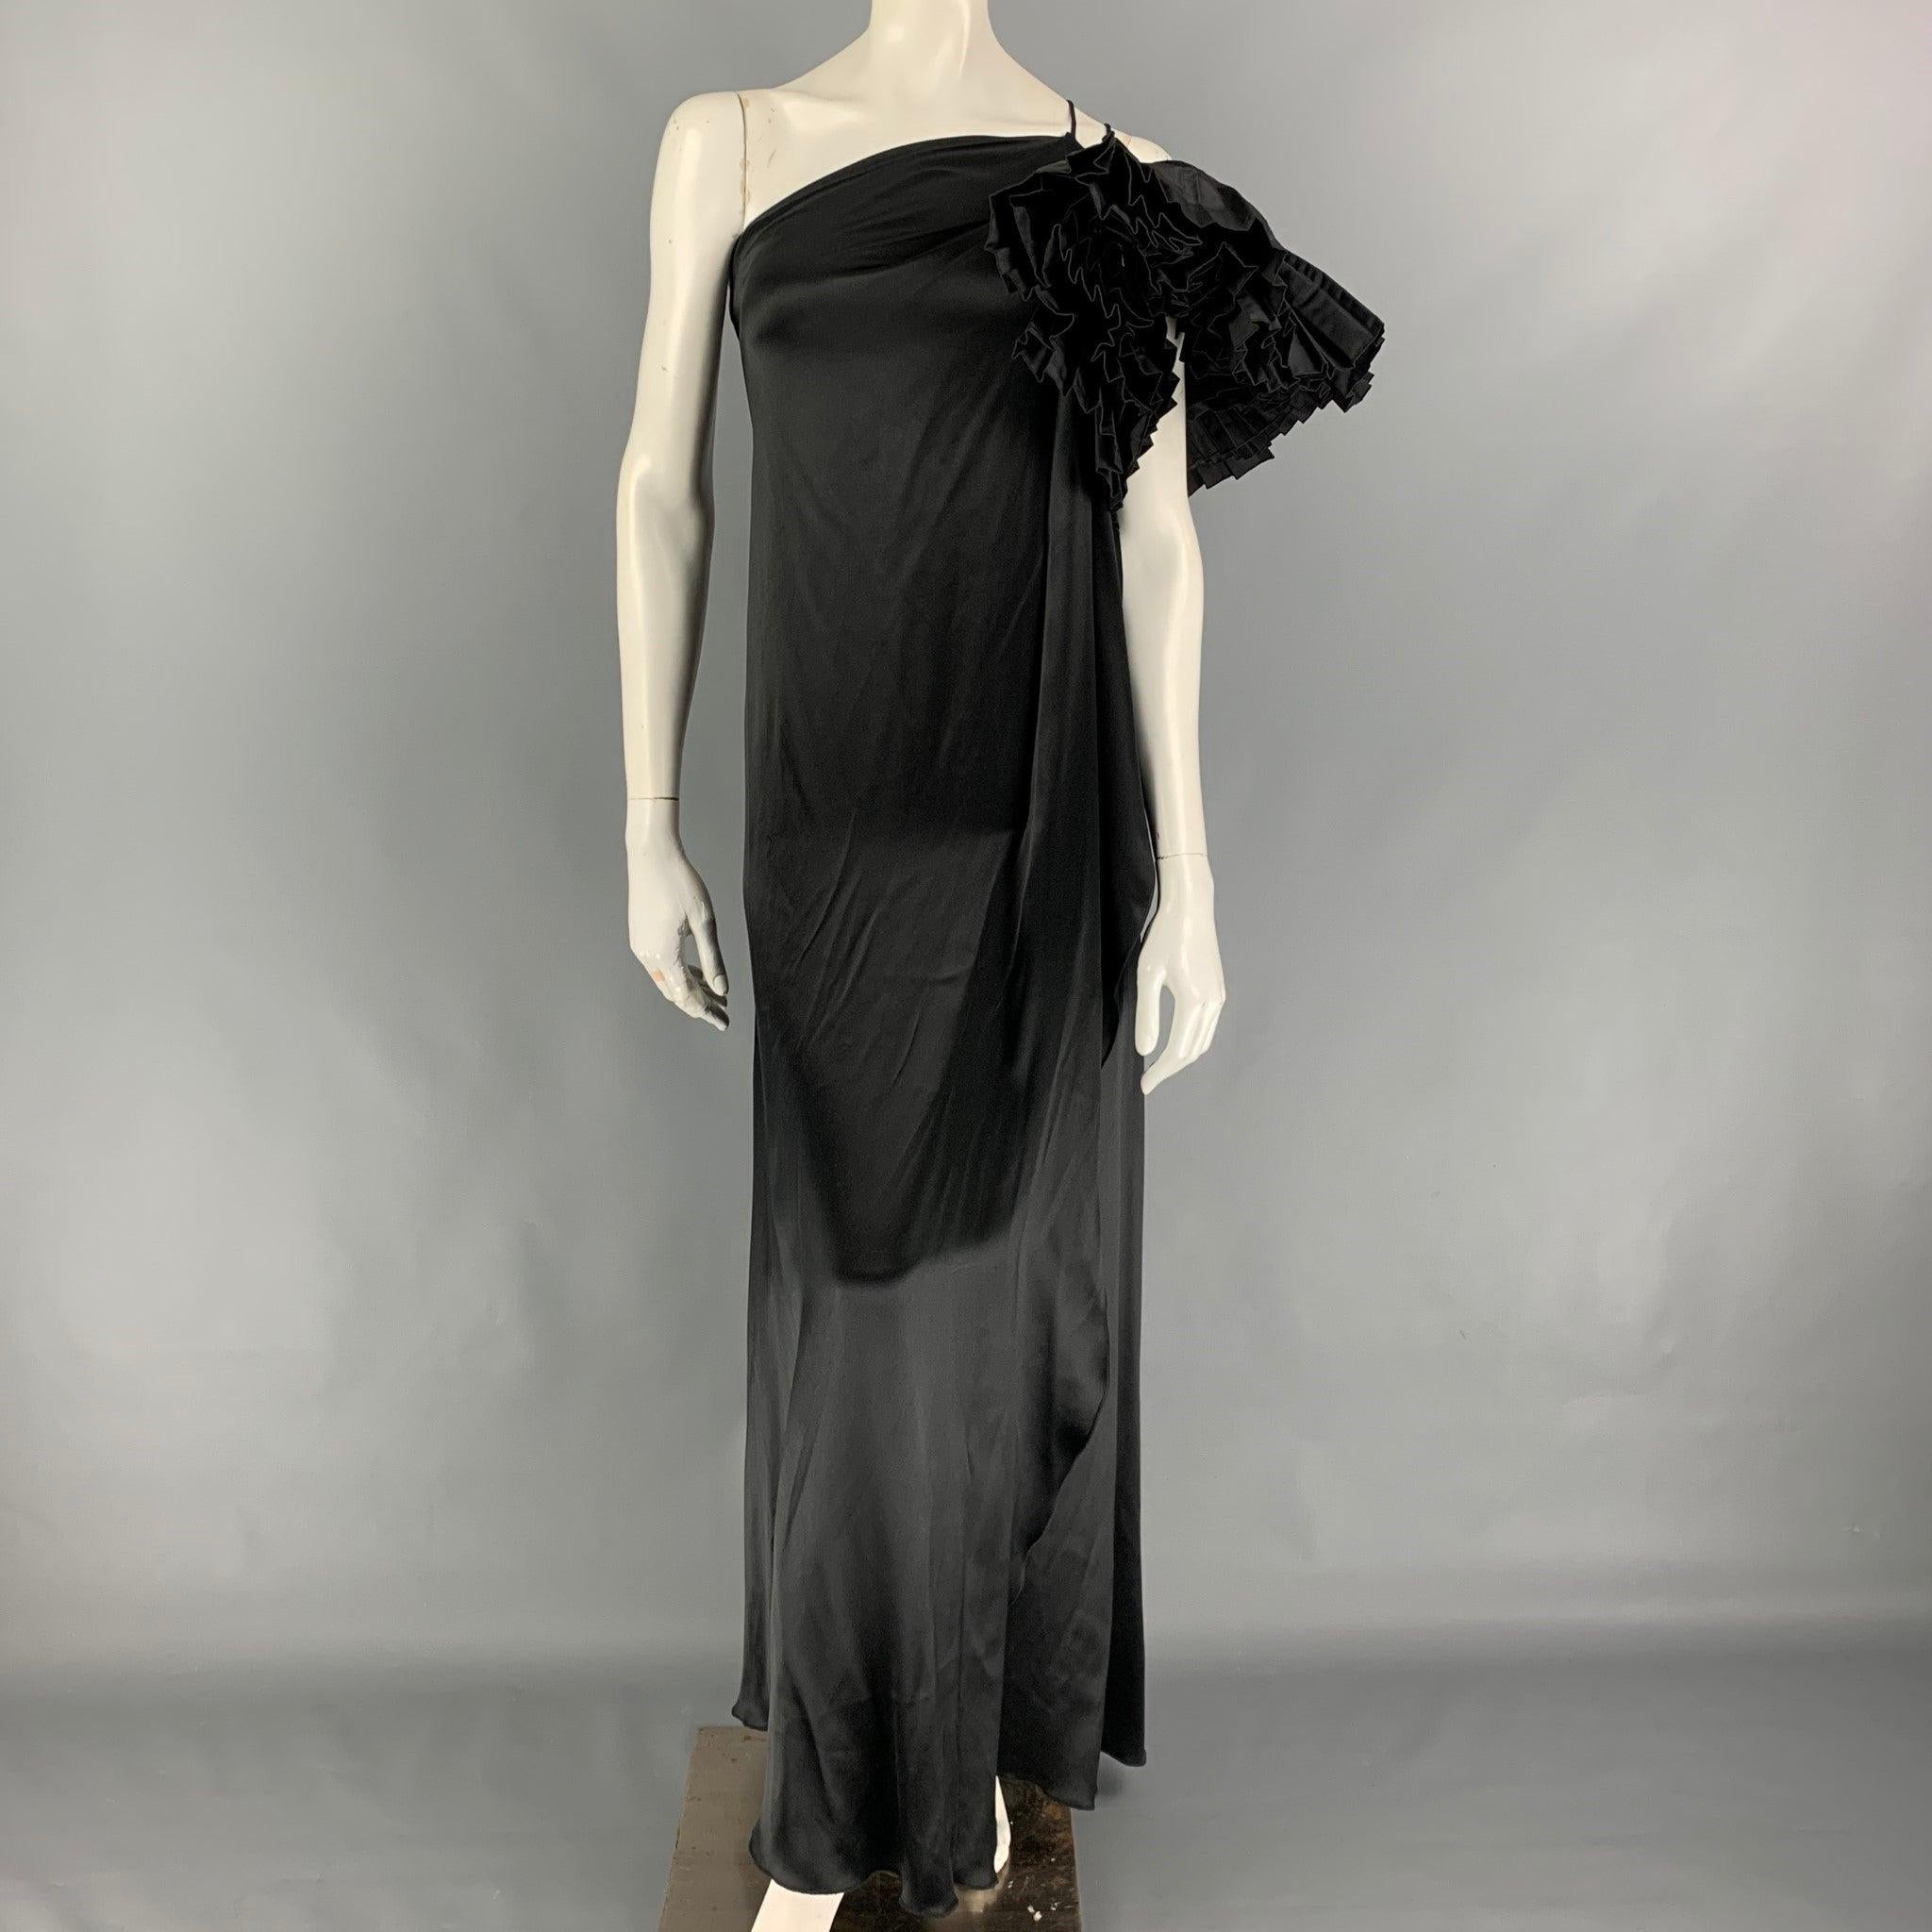 La robe MARC JACOBS est présentée dans une soie noire et présente un style asymétrique, une double bretelle et des manches à volants. Fabriqué aux États-Unis. Très bien
Etat d'occasion. 

Marqué :  0 

Mesures : 
 Poitrine : 28 pouces Hanche : 34